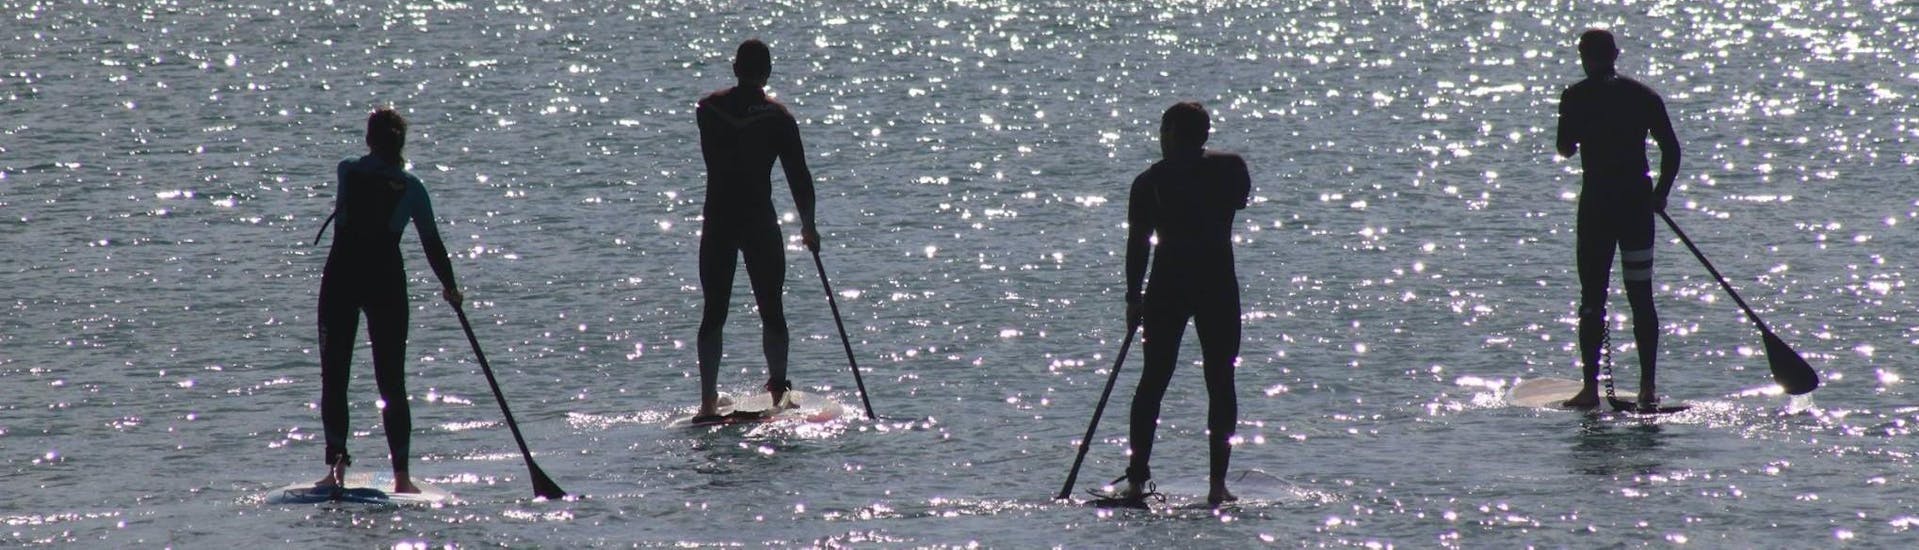 Vier mensen op sup-boards van Nauticdrive in de Atlantische Oceaan voor Praia da Rocha Baixinha.